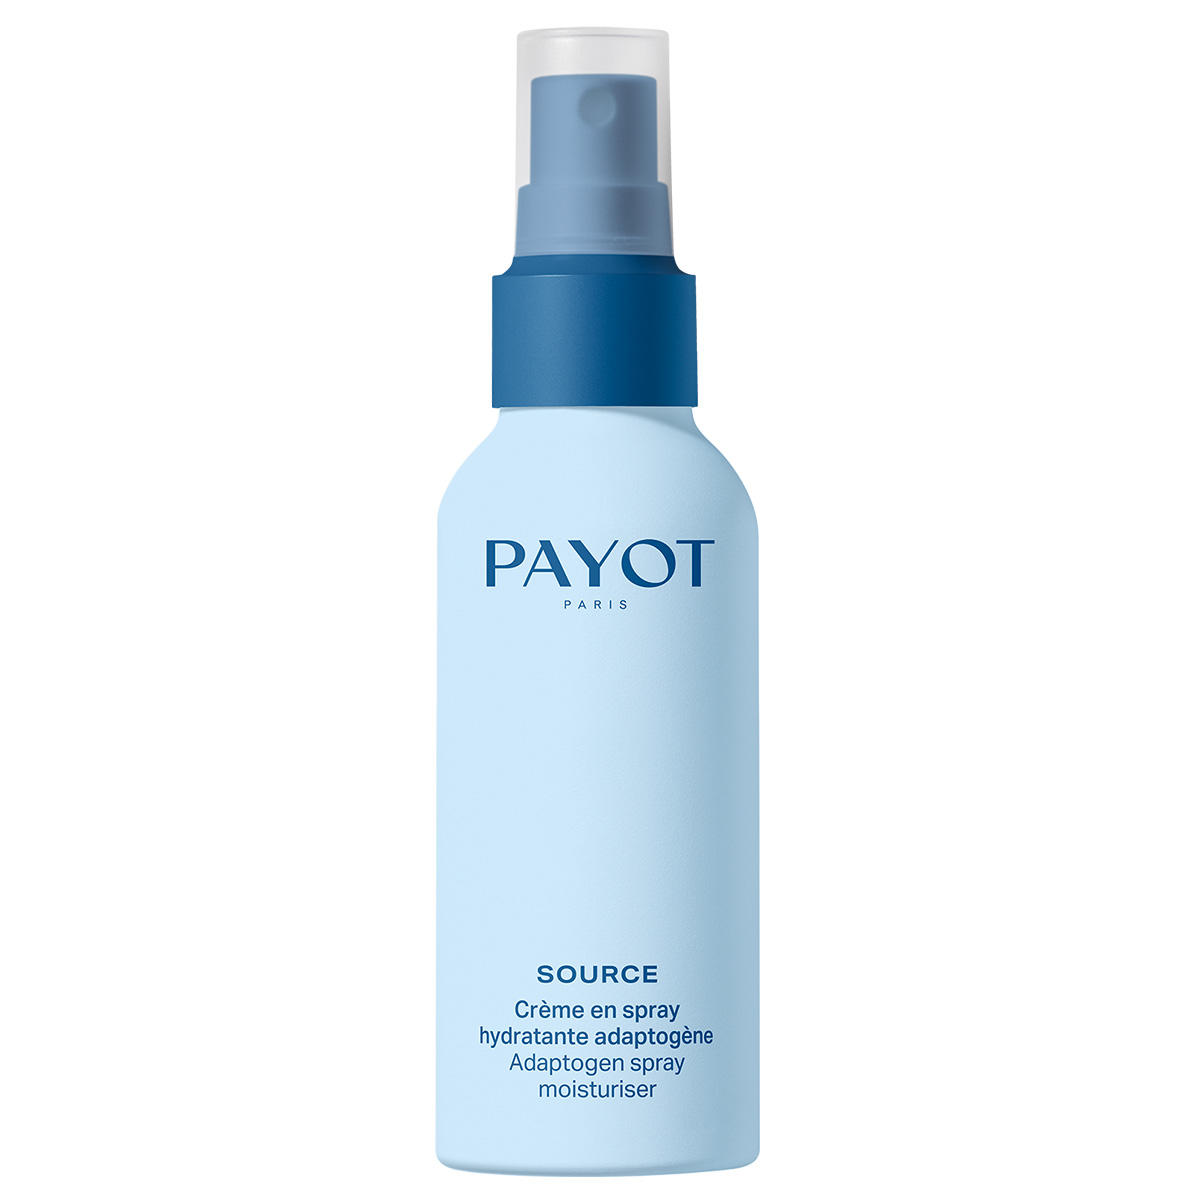 Payot Source Crème en spray hydratante adaptogène 40 ml - 1